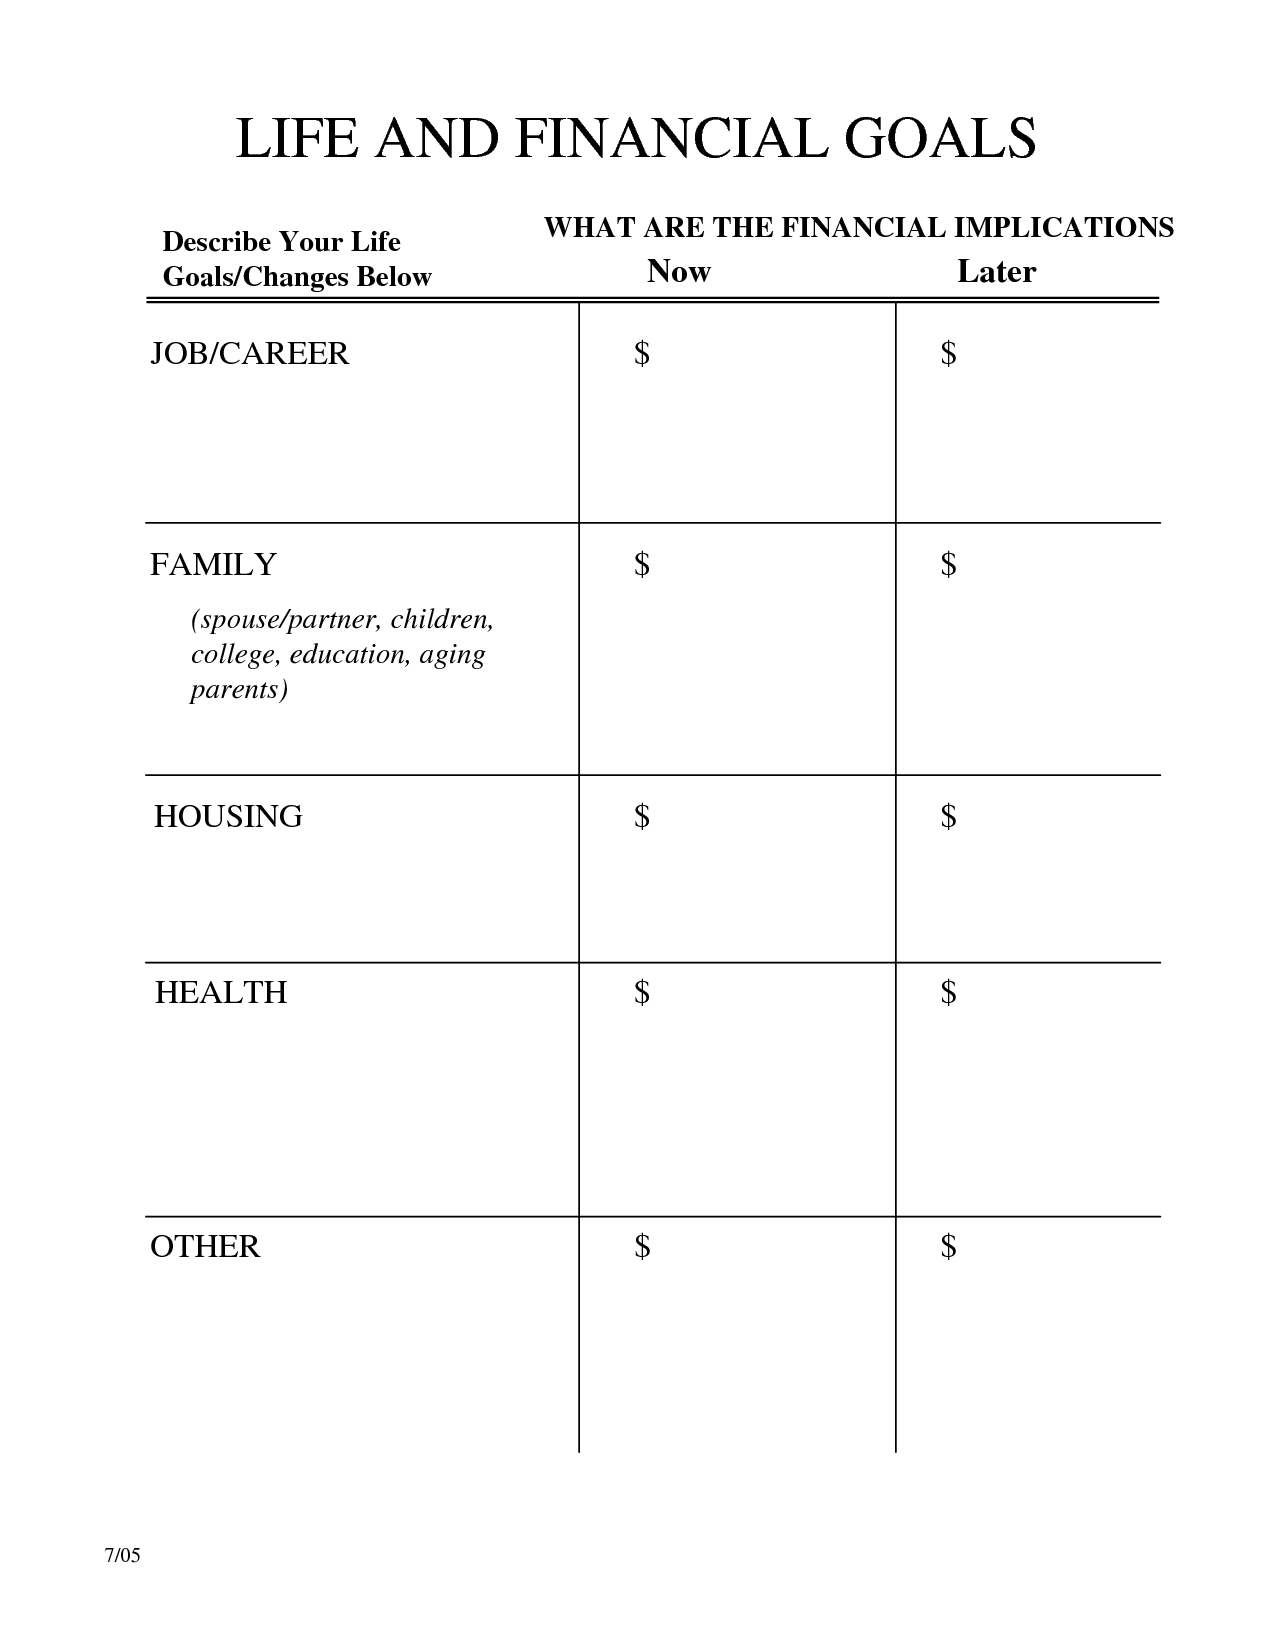 Financial Planning Goals Worksheet Image